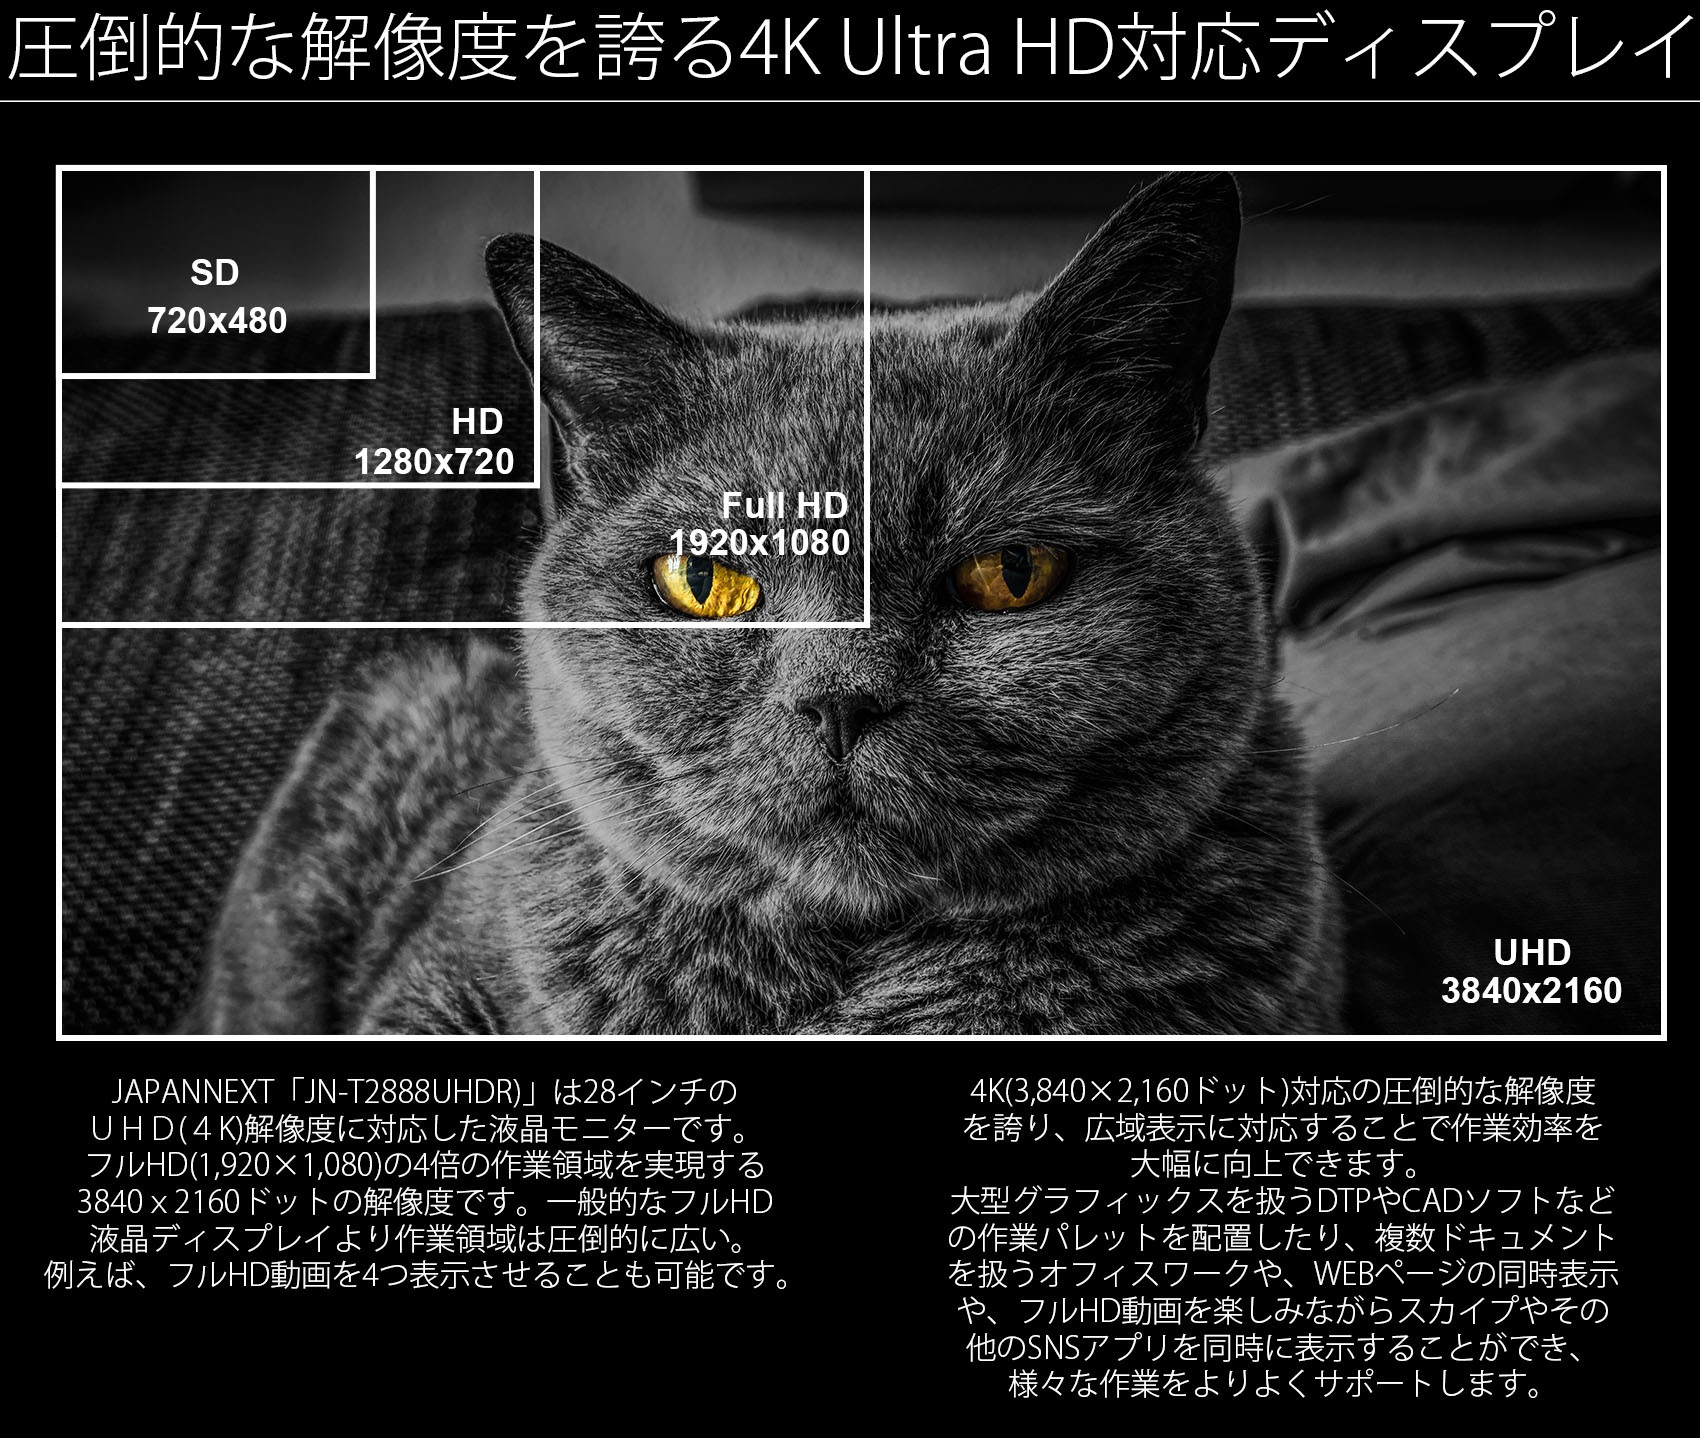 JAPANNEXT「JN-T284CUHDR」は28インチのUHD（4K）解像度に対応した液晶ディスプレイです。フルHD（1920×1080）の4倍の作業領域を実現する3840ｘ2160ドットの解像度です。一般的なフルHD液晶ディスプレイより作業領域は圧倒的に広い。例えば、フルHD動画を同時に4つ表示可能です。4K（3840x2160ドット）対応の圧倒的な解像度を誇り、広域表示に対応することで作業効率を大幅に向上できます。大型グラフィックスを扱うDTPやCADソフトなどの作業パレットを配置したり、複数ドキュメントを扱うオフィスワークや、WEBページの同時表示や、フルHD動画を楽しみながらスカイプやその他のSNSアプリを同時に表示することができ、様々な作業をよりよくサポートします。